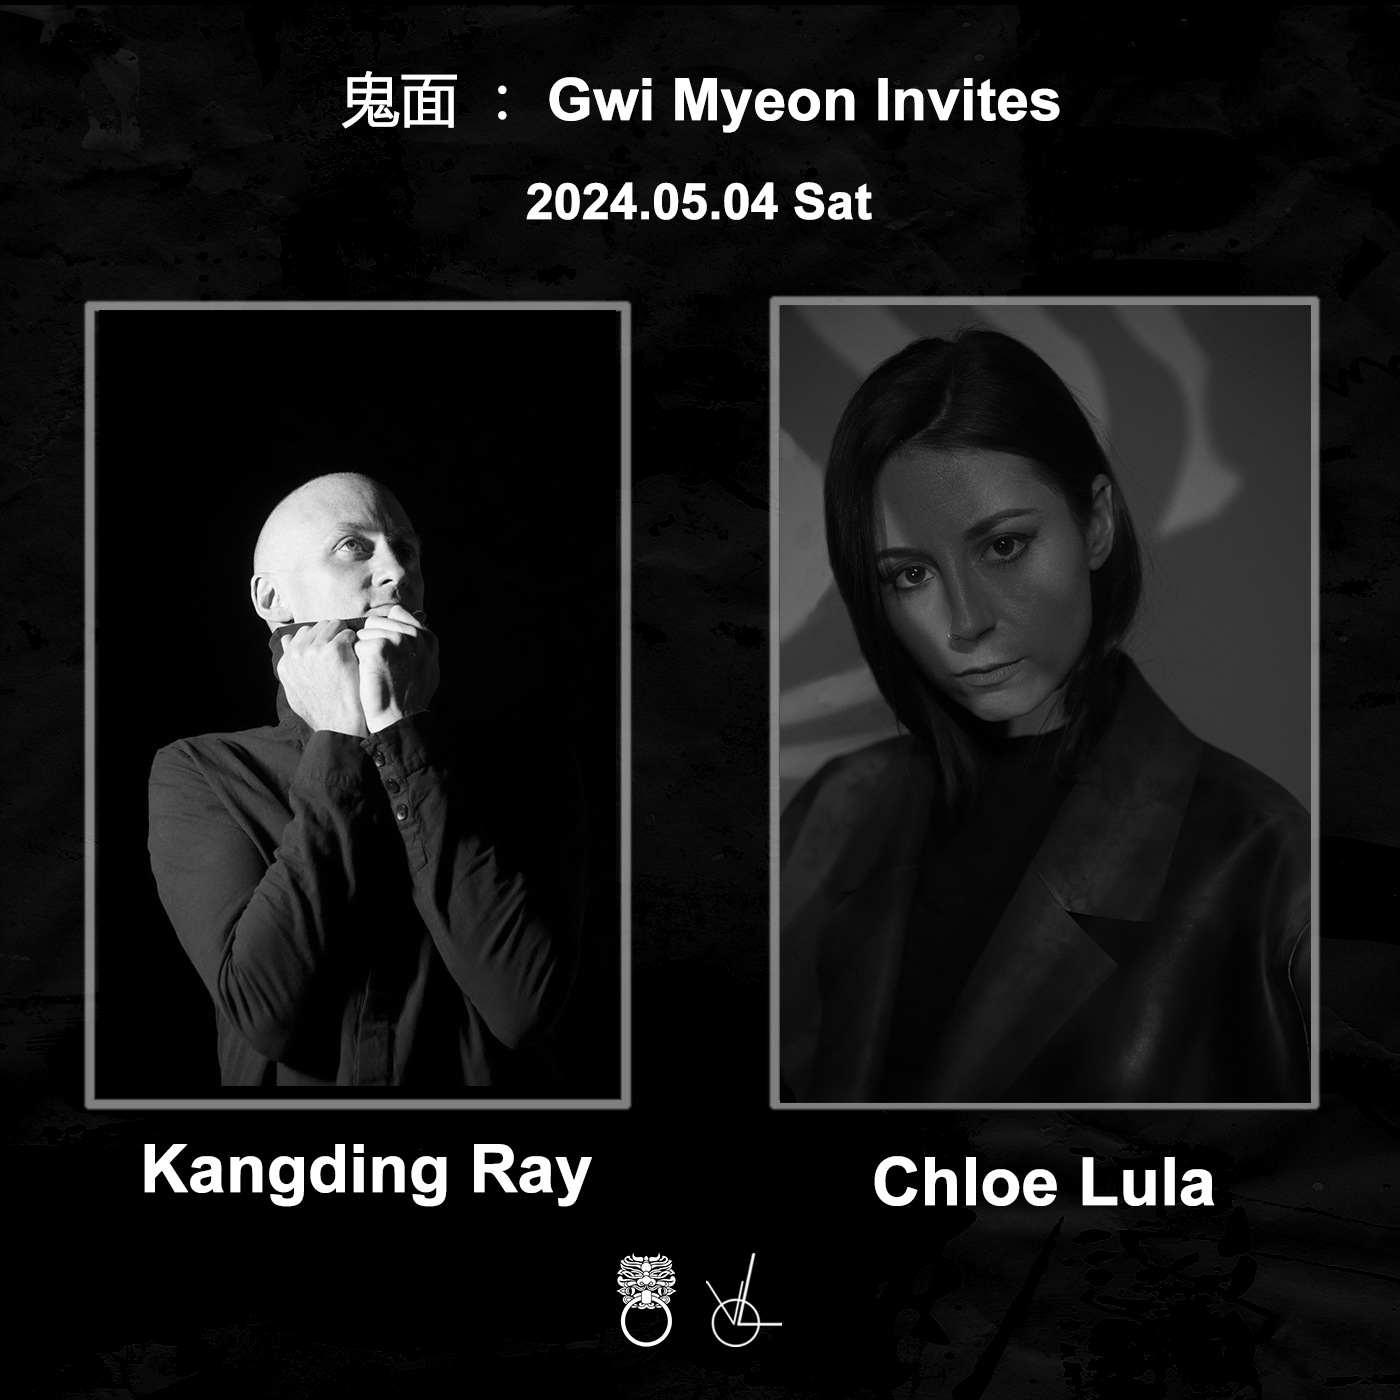 鬼面: GWI MYEON Invites 'Chloe Lula' & 'Kangding Ray' - Página trasera